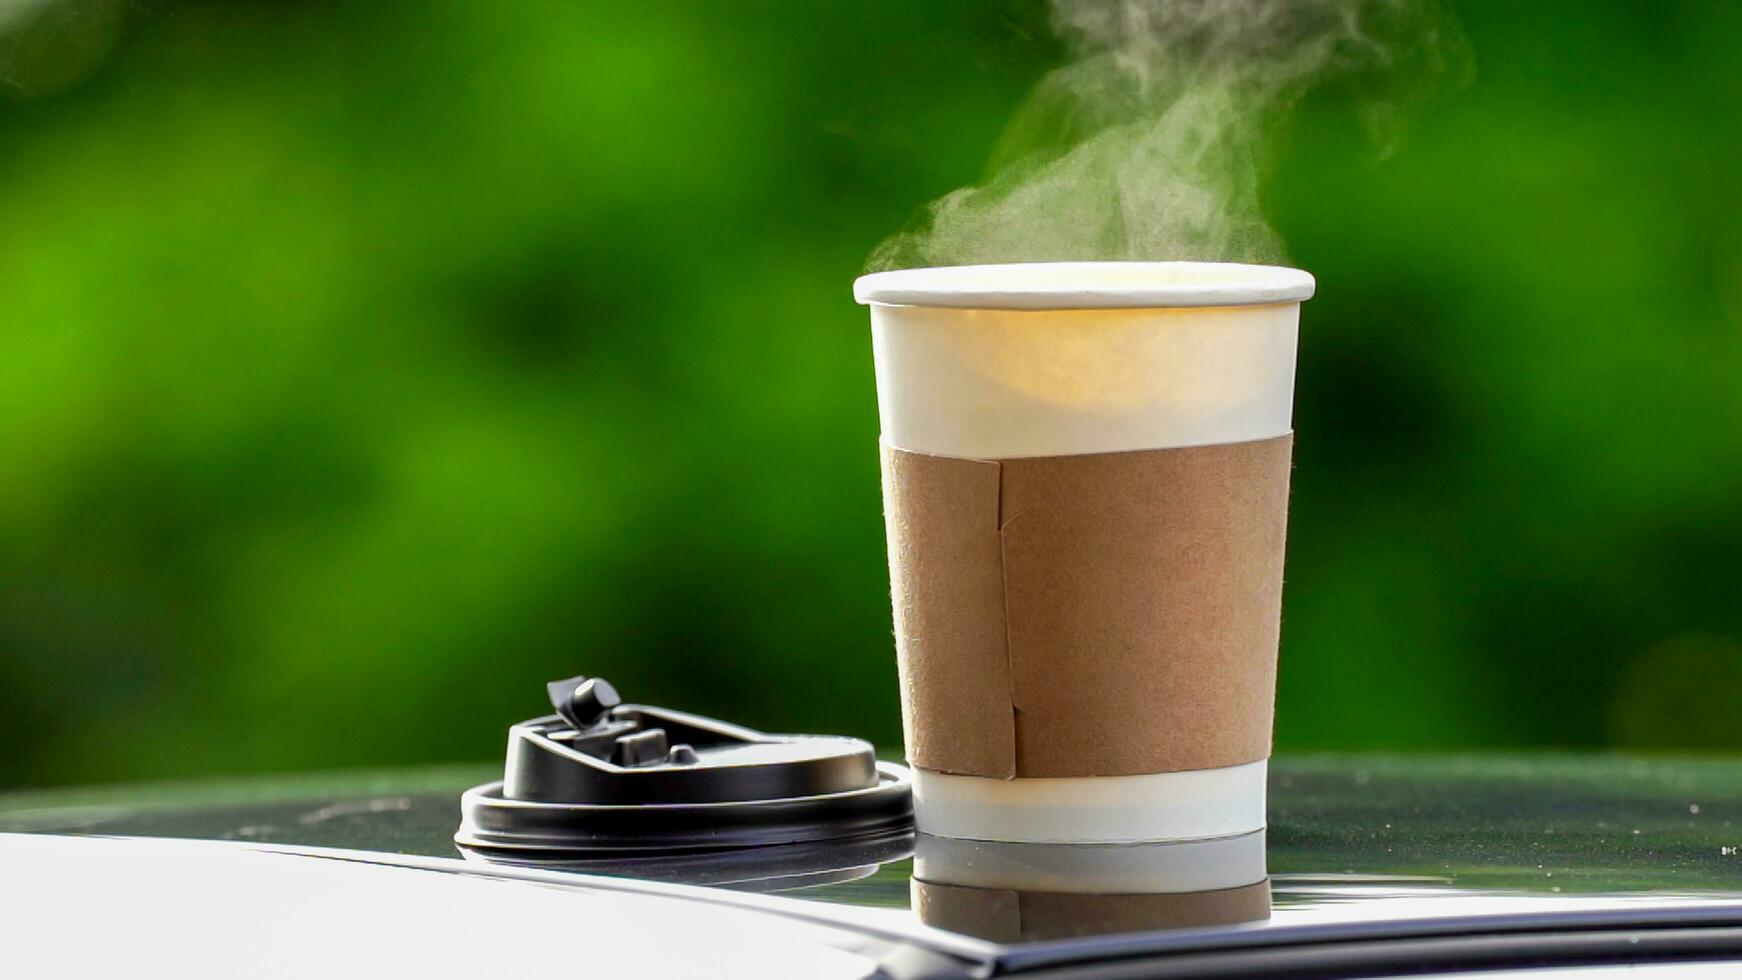 Kaffee wegbringen im ein Papier Tasse auf oben von das Auto Dach Grün Baum Hintergrund beim Sonnenaufgang im das Morgen, selektiv Fokus, Sanft Fokus. foto